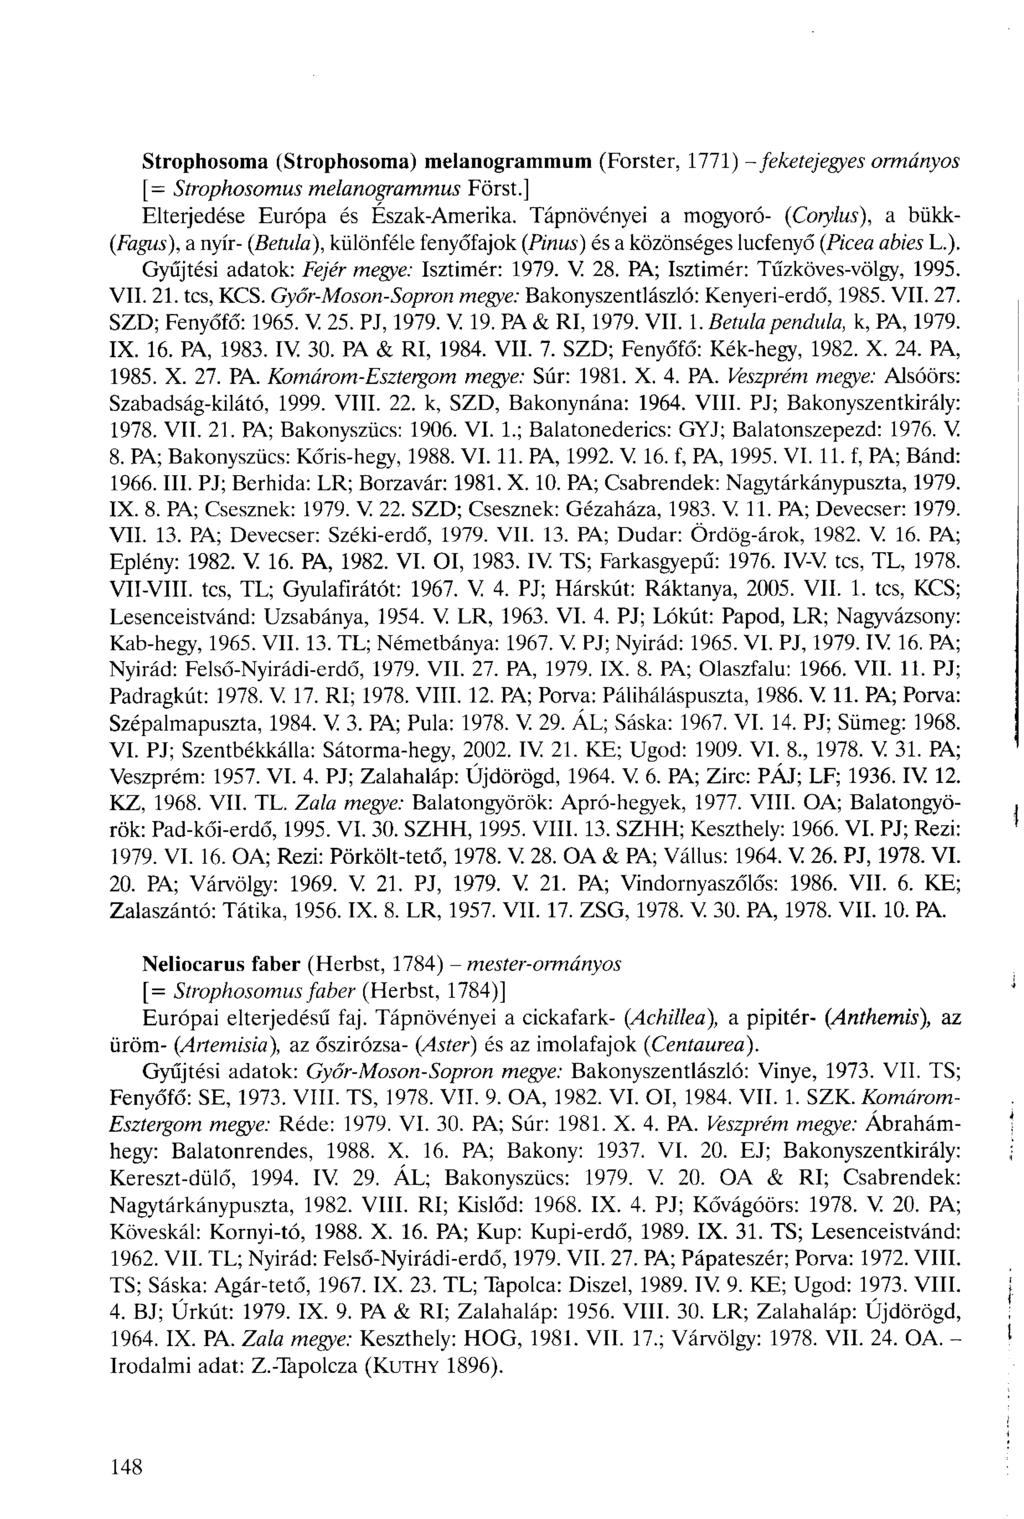 Strophosoma (Strophosoma) melanogrammum (Forster, 1771) - feketejegyes [= Strophosomus melanogrammus Forst.] ormányos Elterjedése Európa és Észak-Amerika.